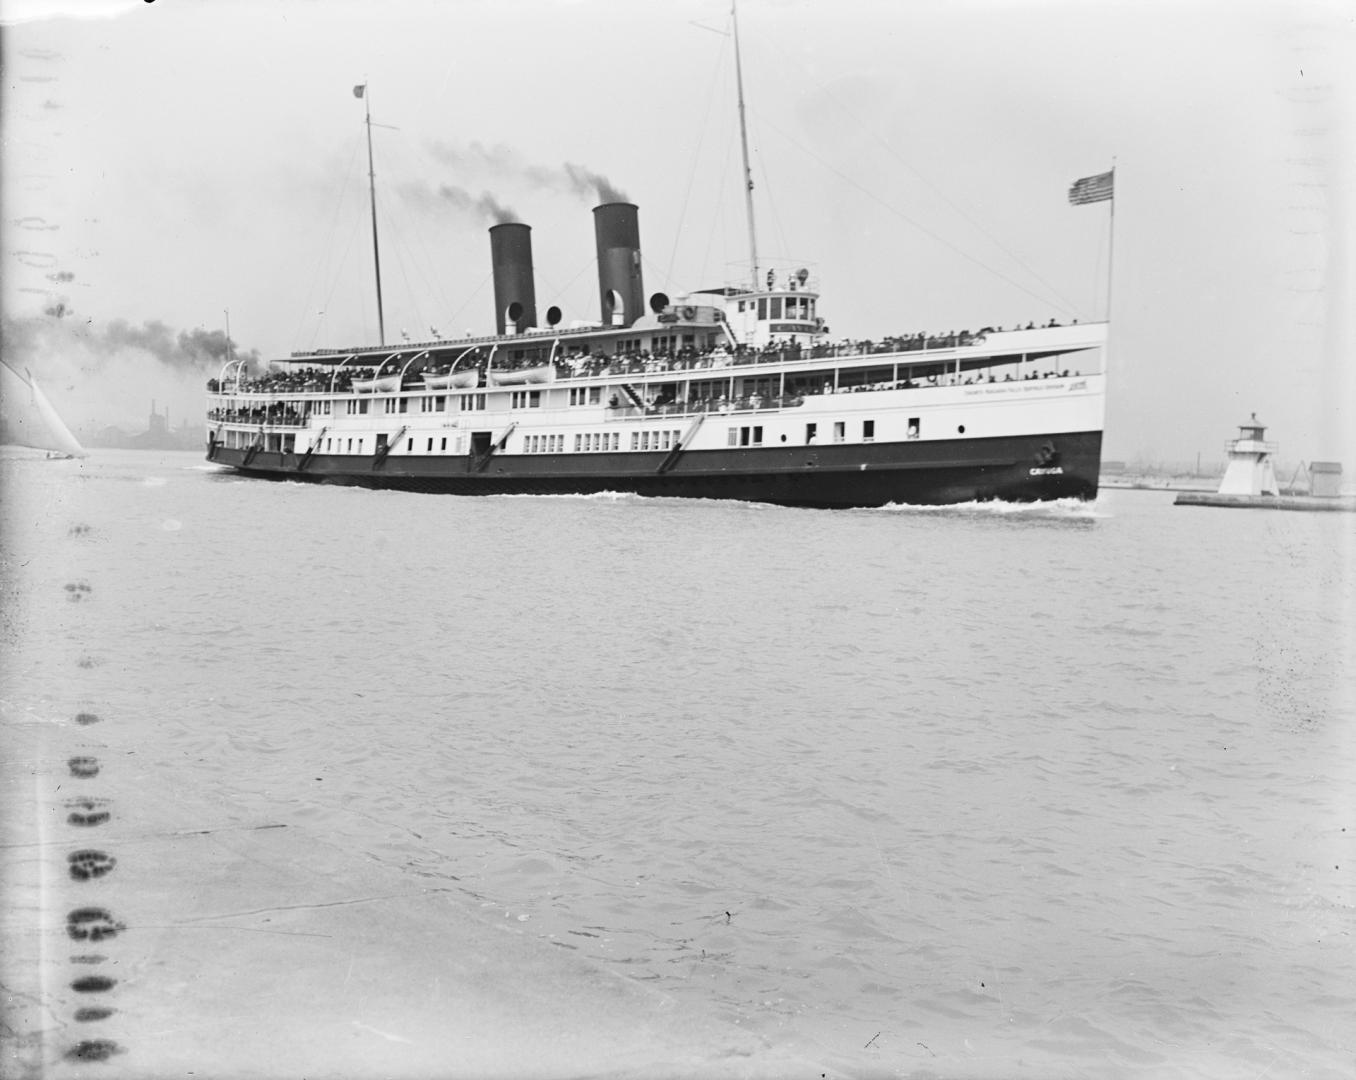 Cayuga (1907-1960), leaving Toronto through Eastern Gap